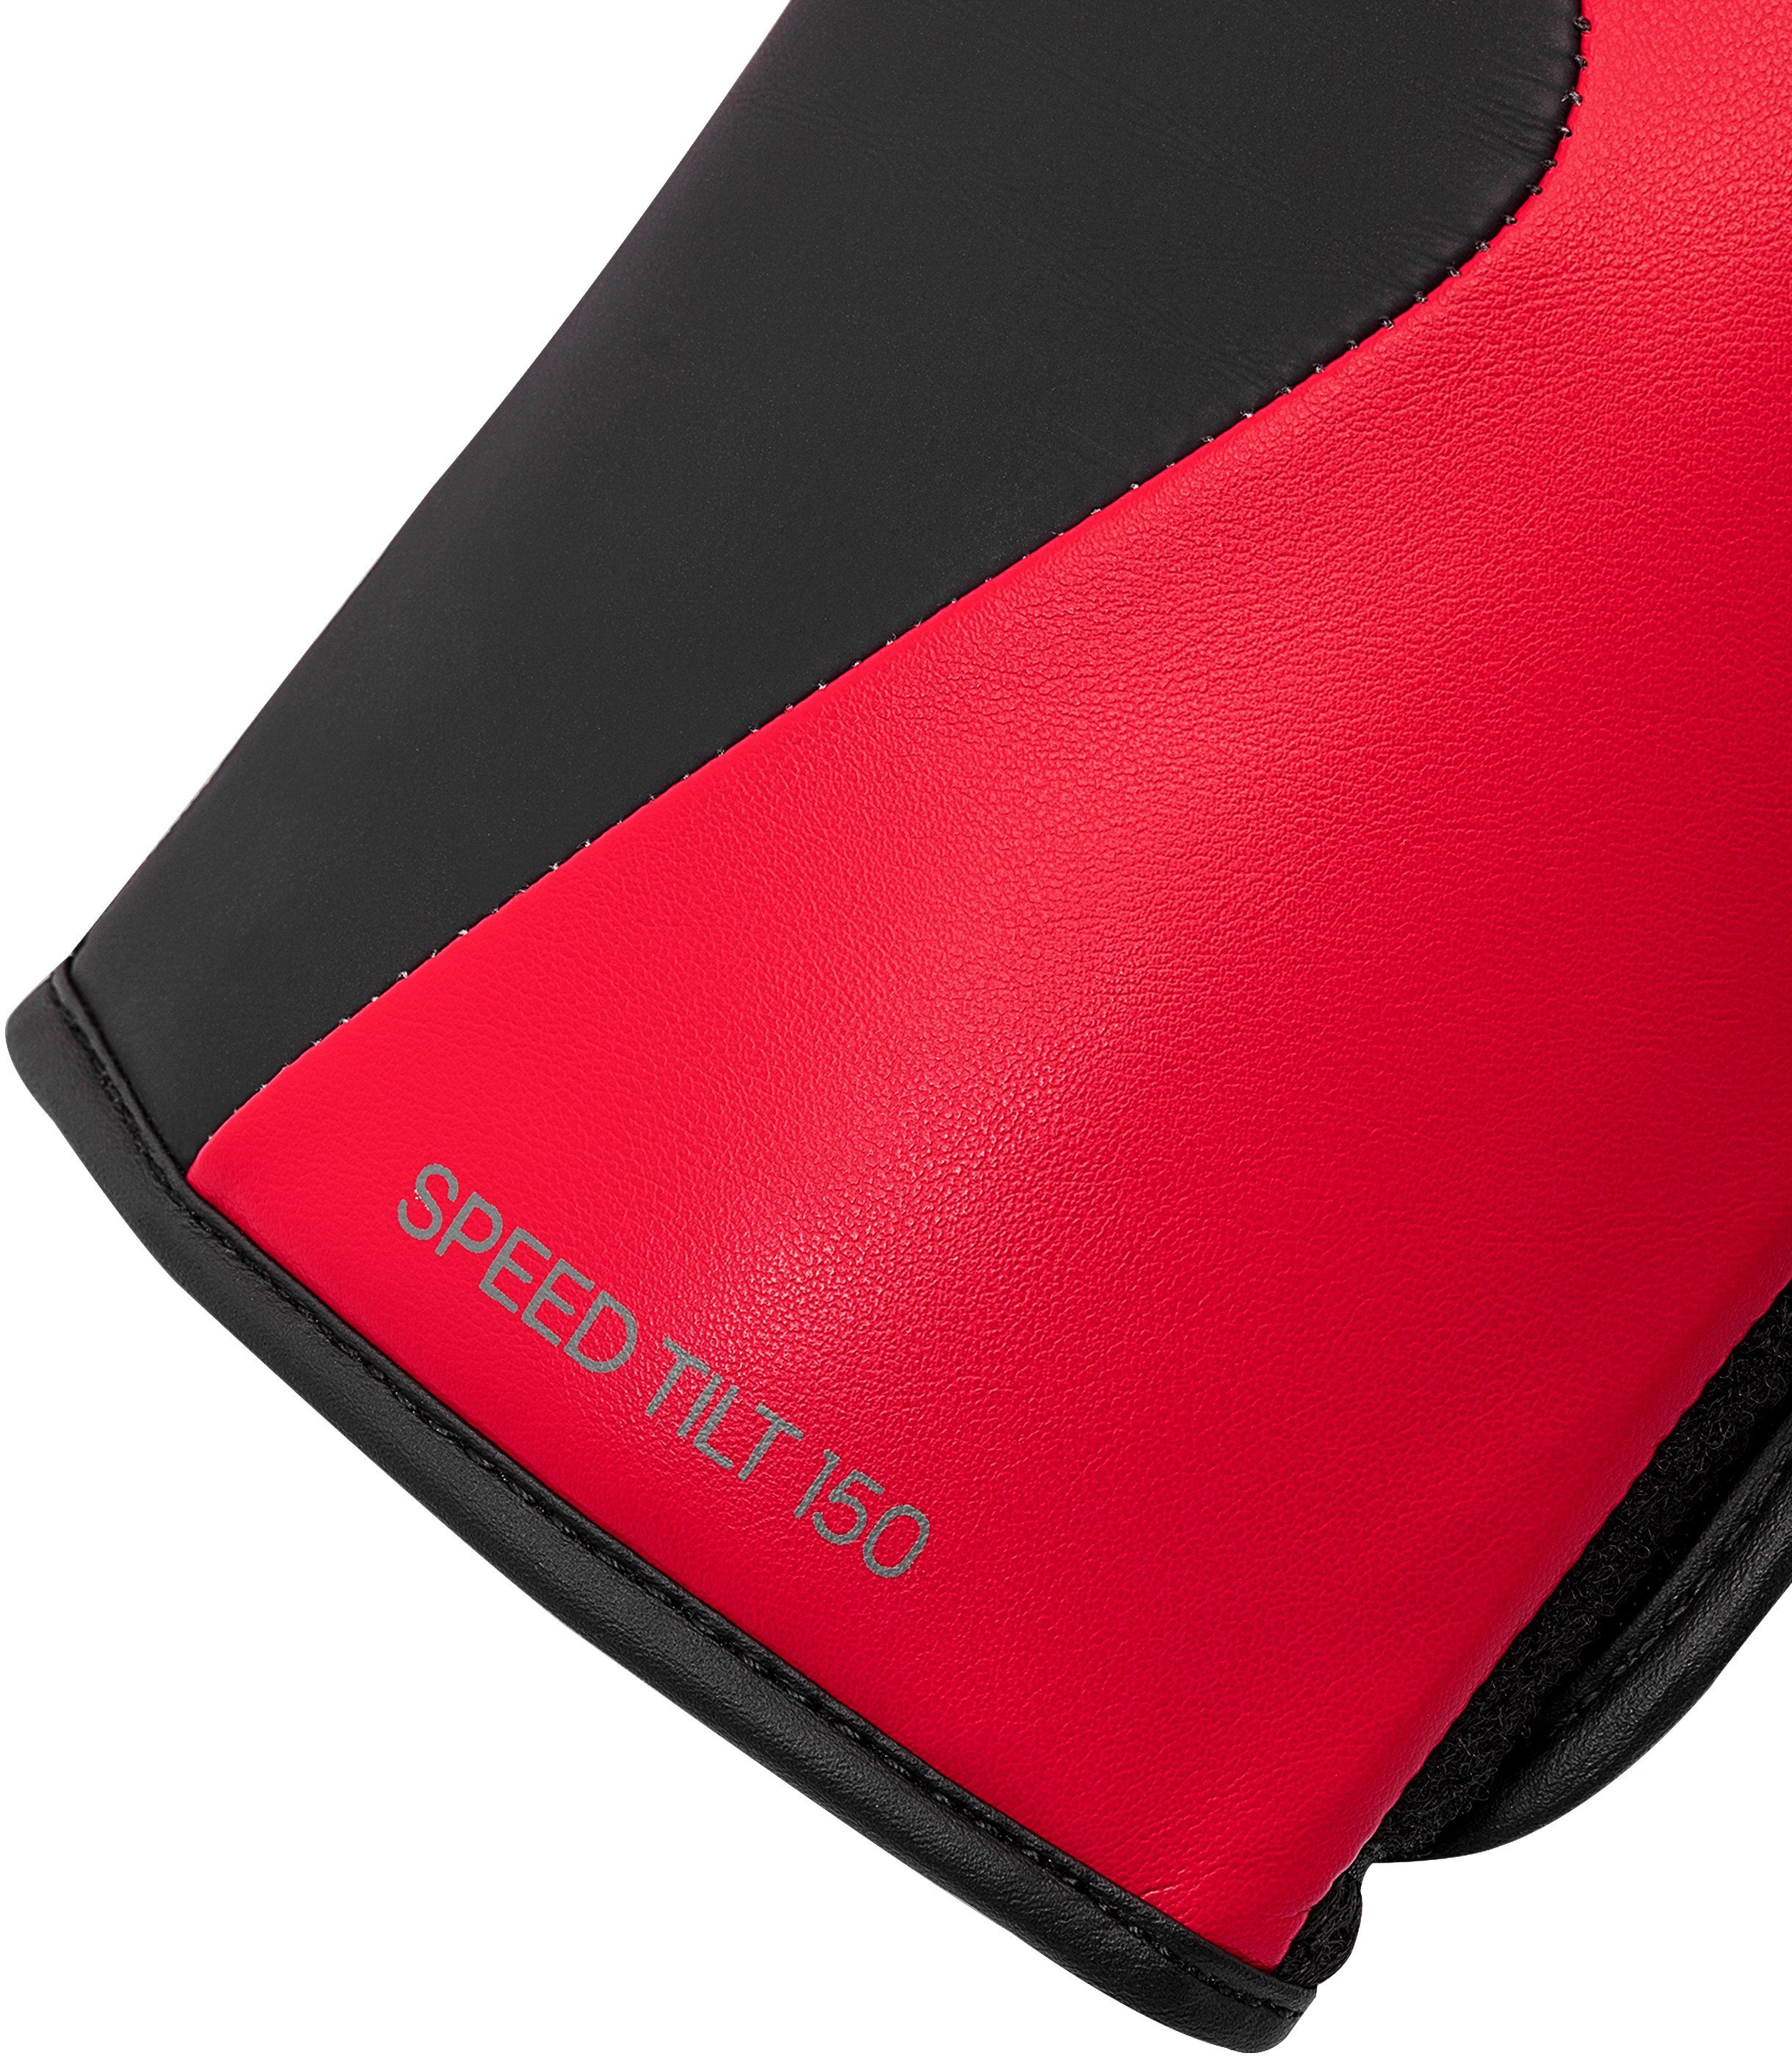 Tilt rot/schwarz Boxhandschuhe Performance 150 Speed adidas